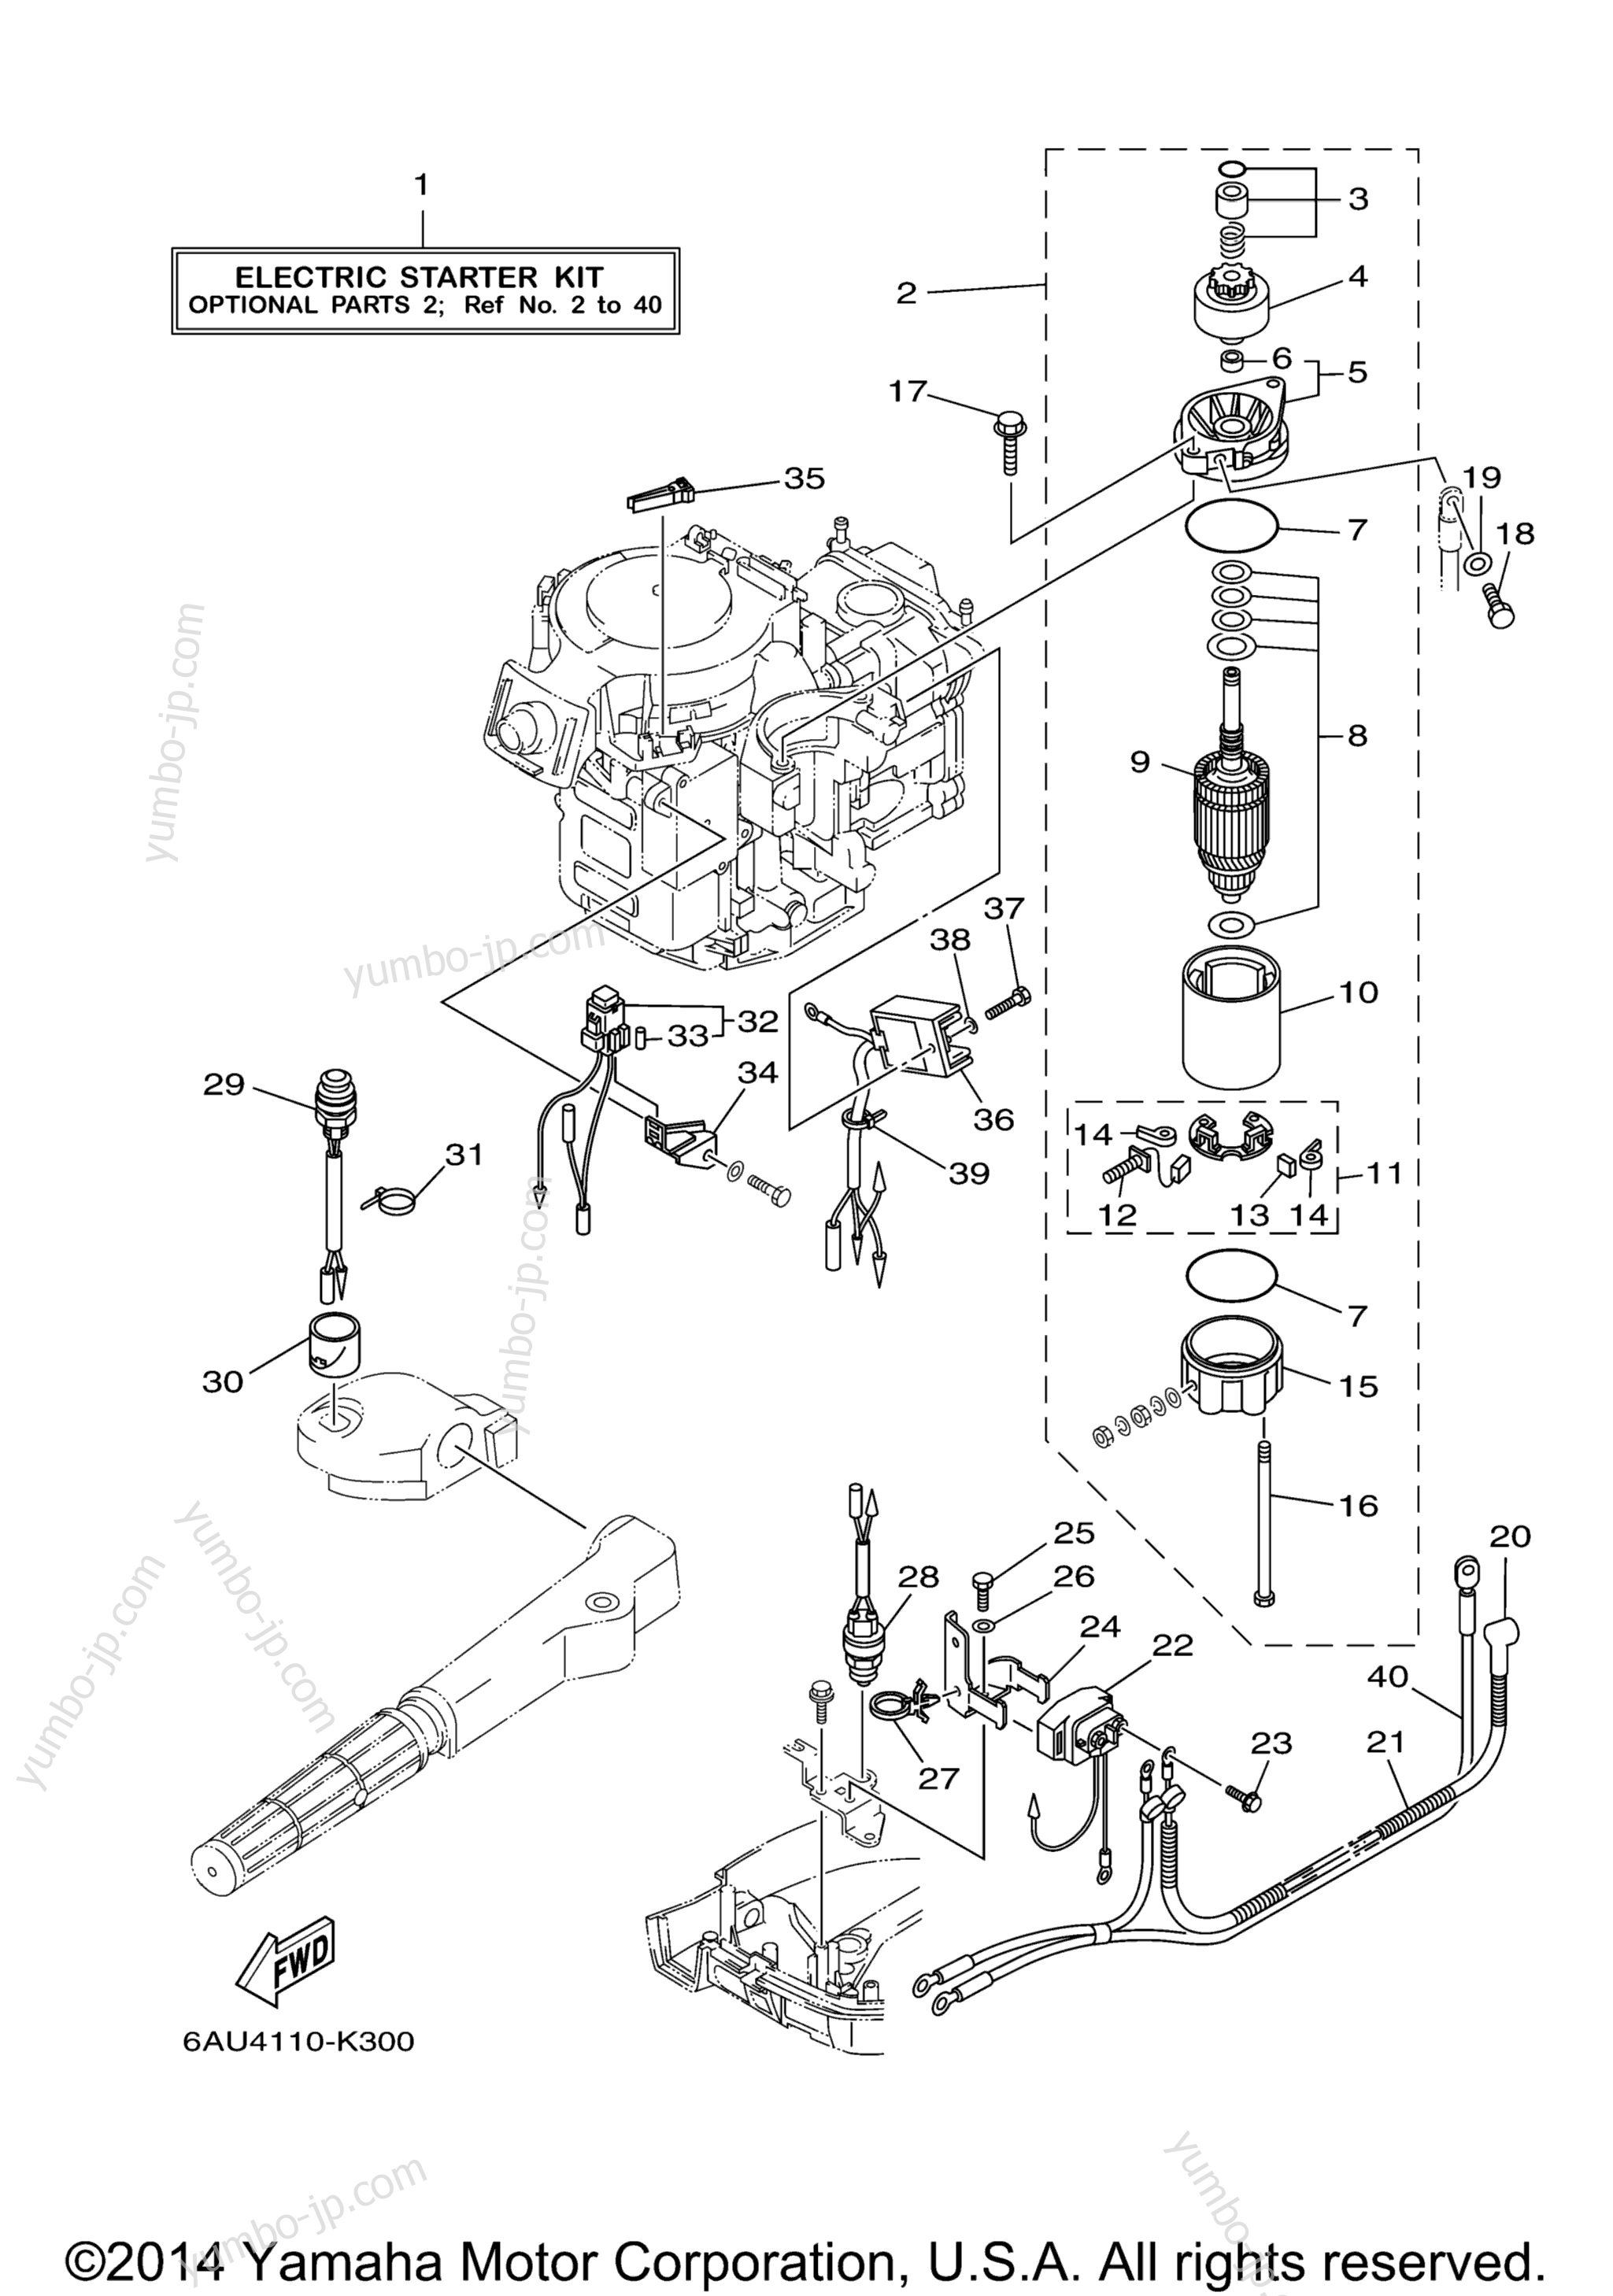 Optional Parts 1 для лодочных моторов YAMAHA F9.9LEA_04 (0411) 2006 г.